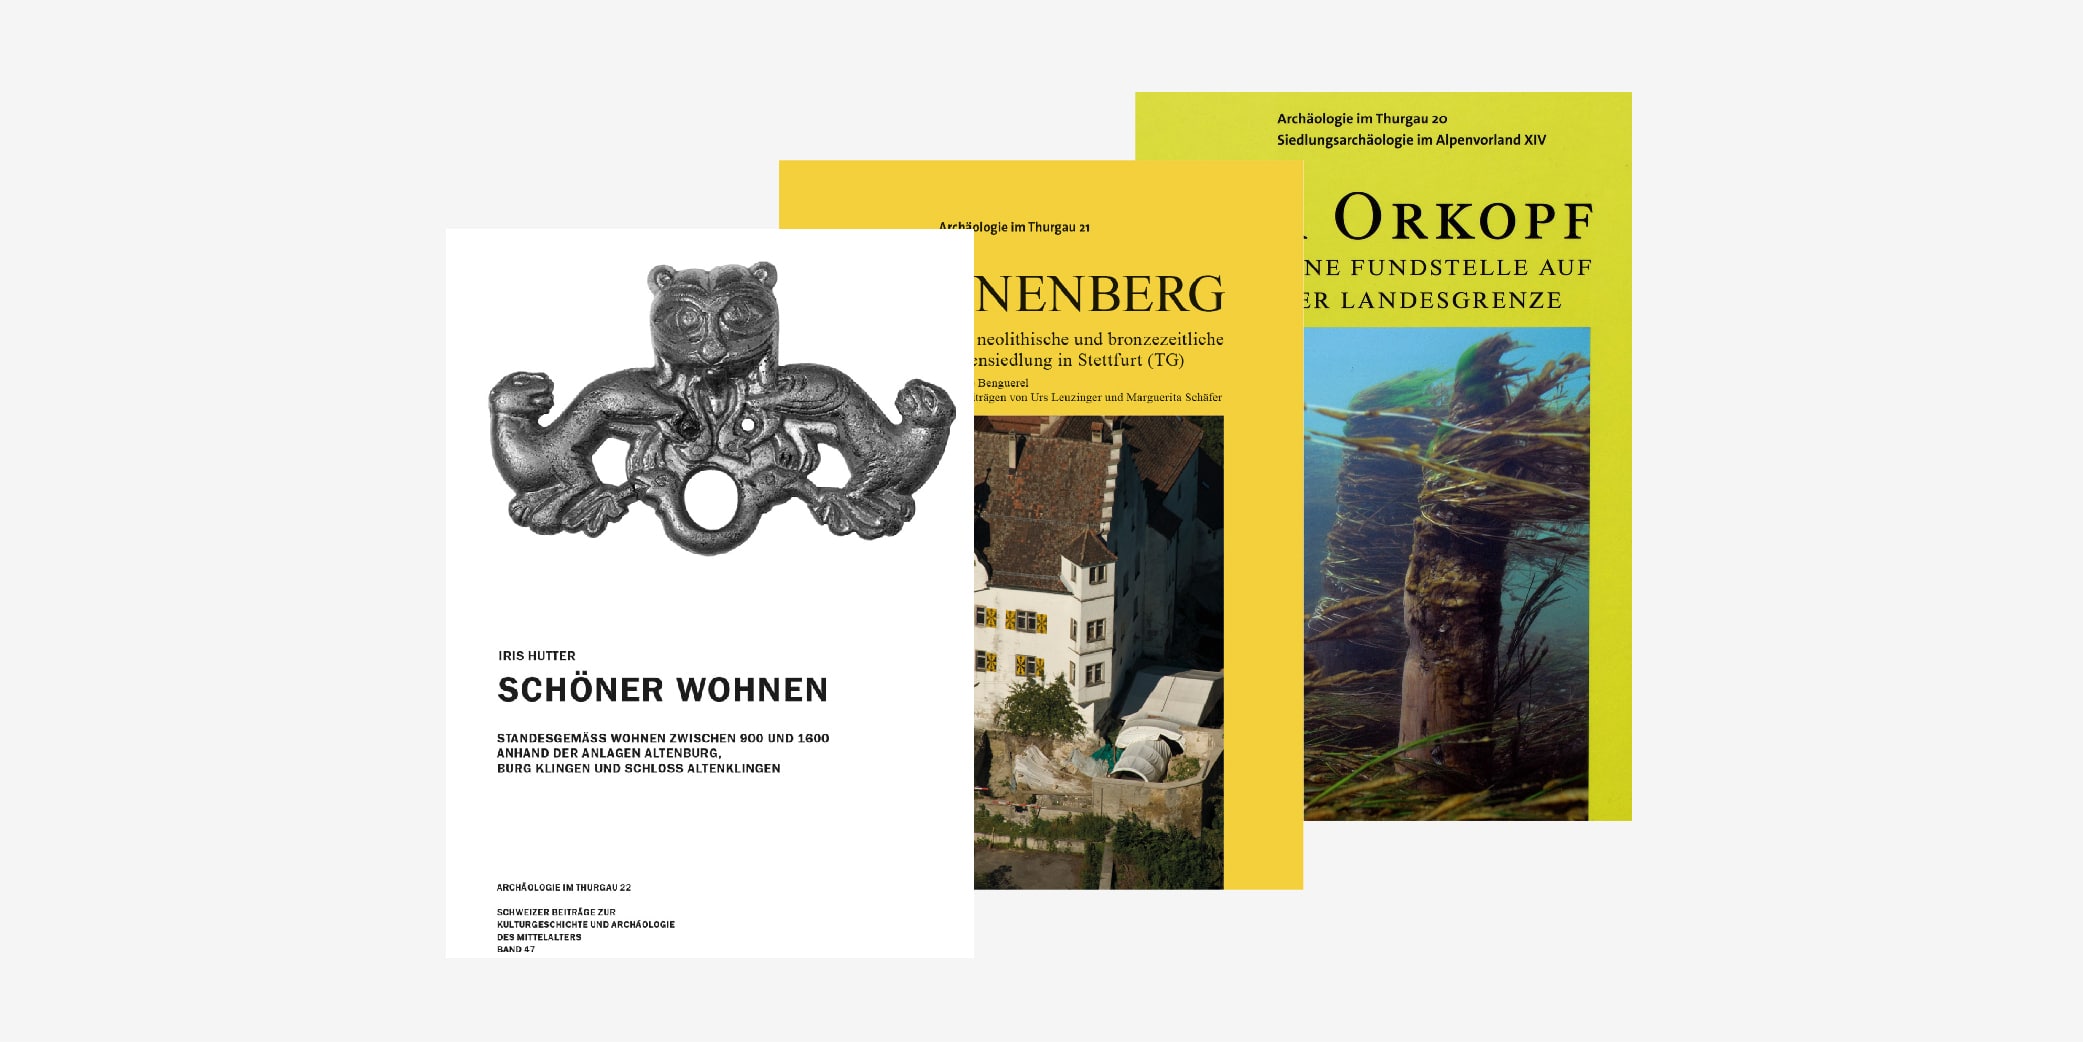 Übereinander gelegt die letzten drei Publikationen der Reihe Archäologie im Thurgau 